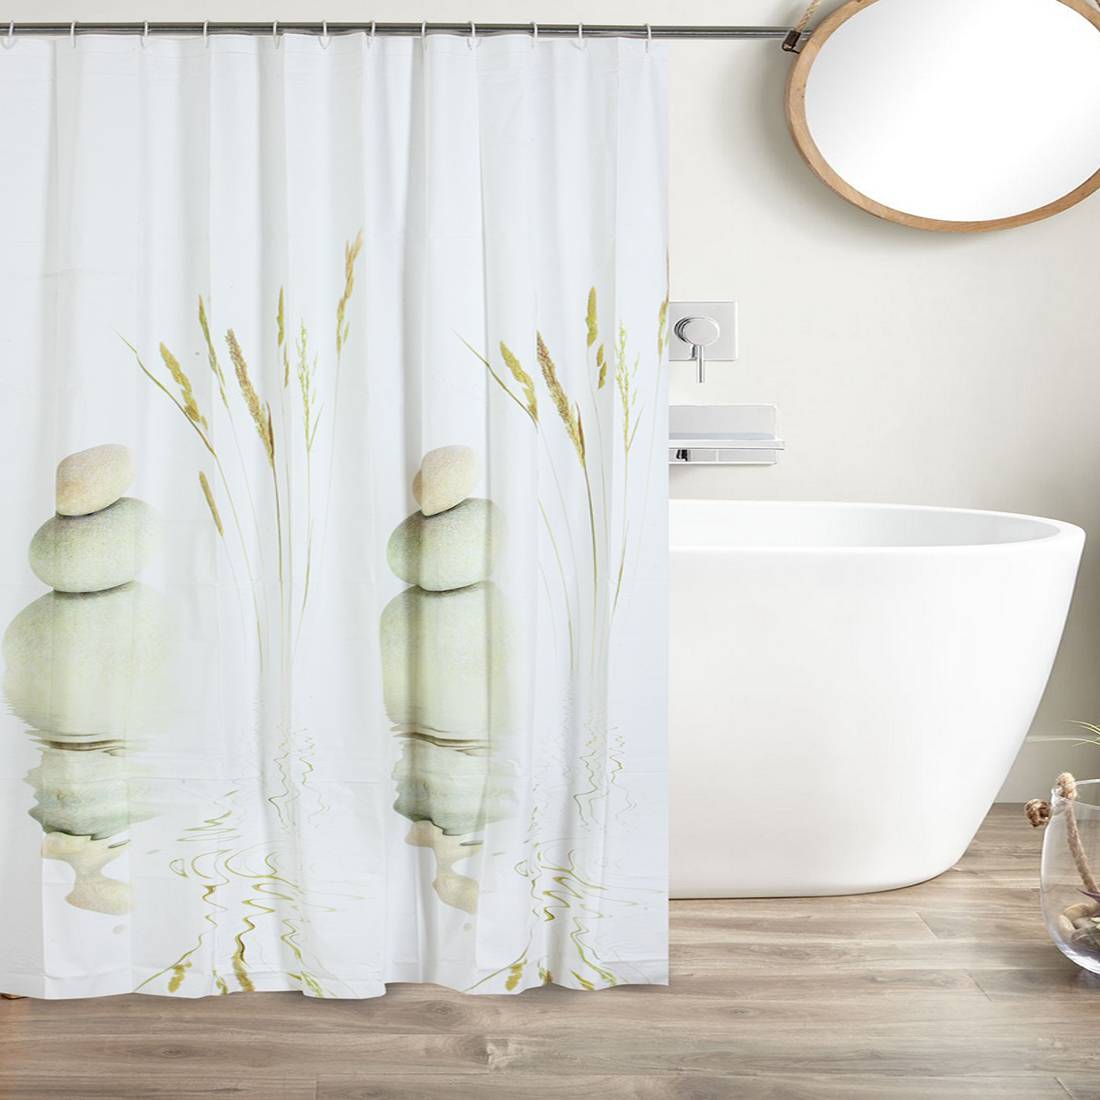 Shower Curtains Waterproof, Beach Scene Shower Curtains Bath Accessories